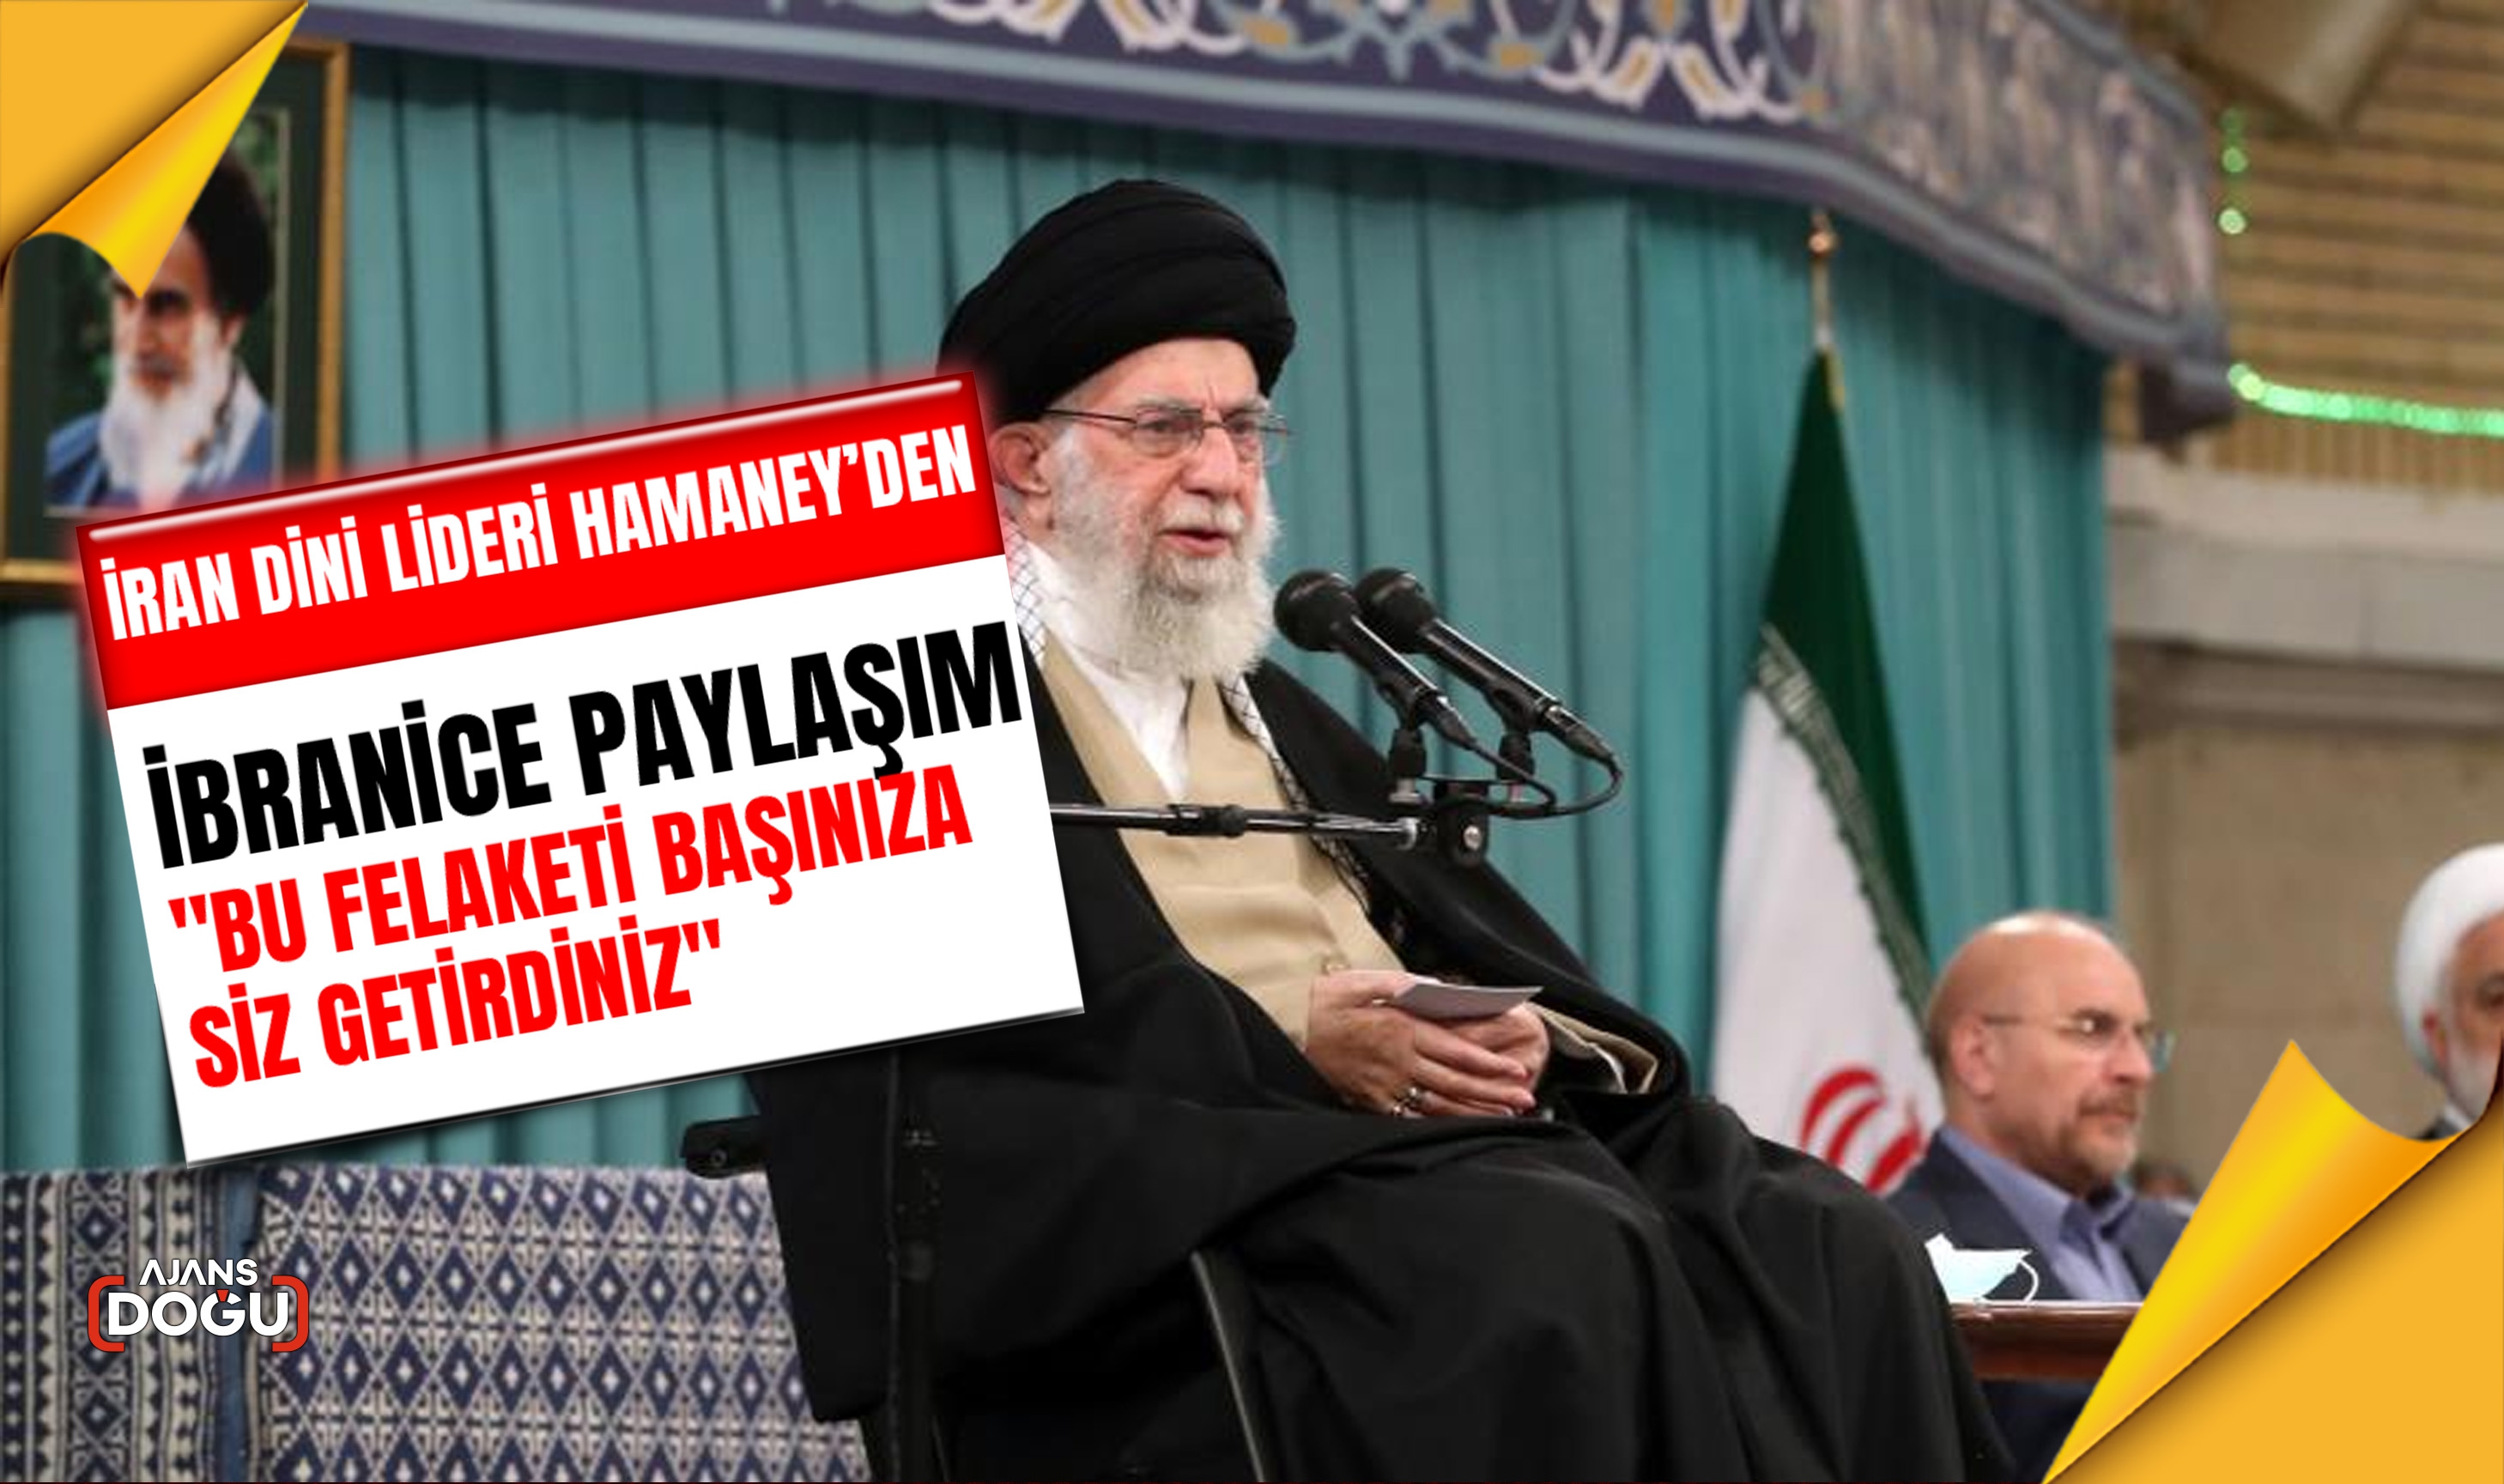 İran dini lideri Hamaney’den İbranice paylaşım: Bu felaketi başınıza siz getirdiniz